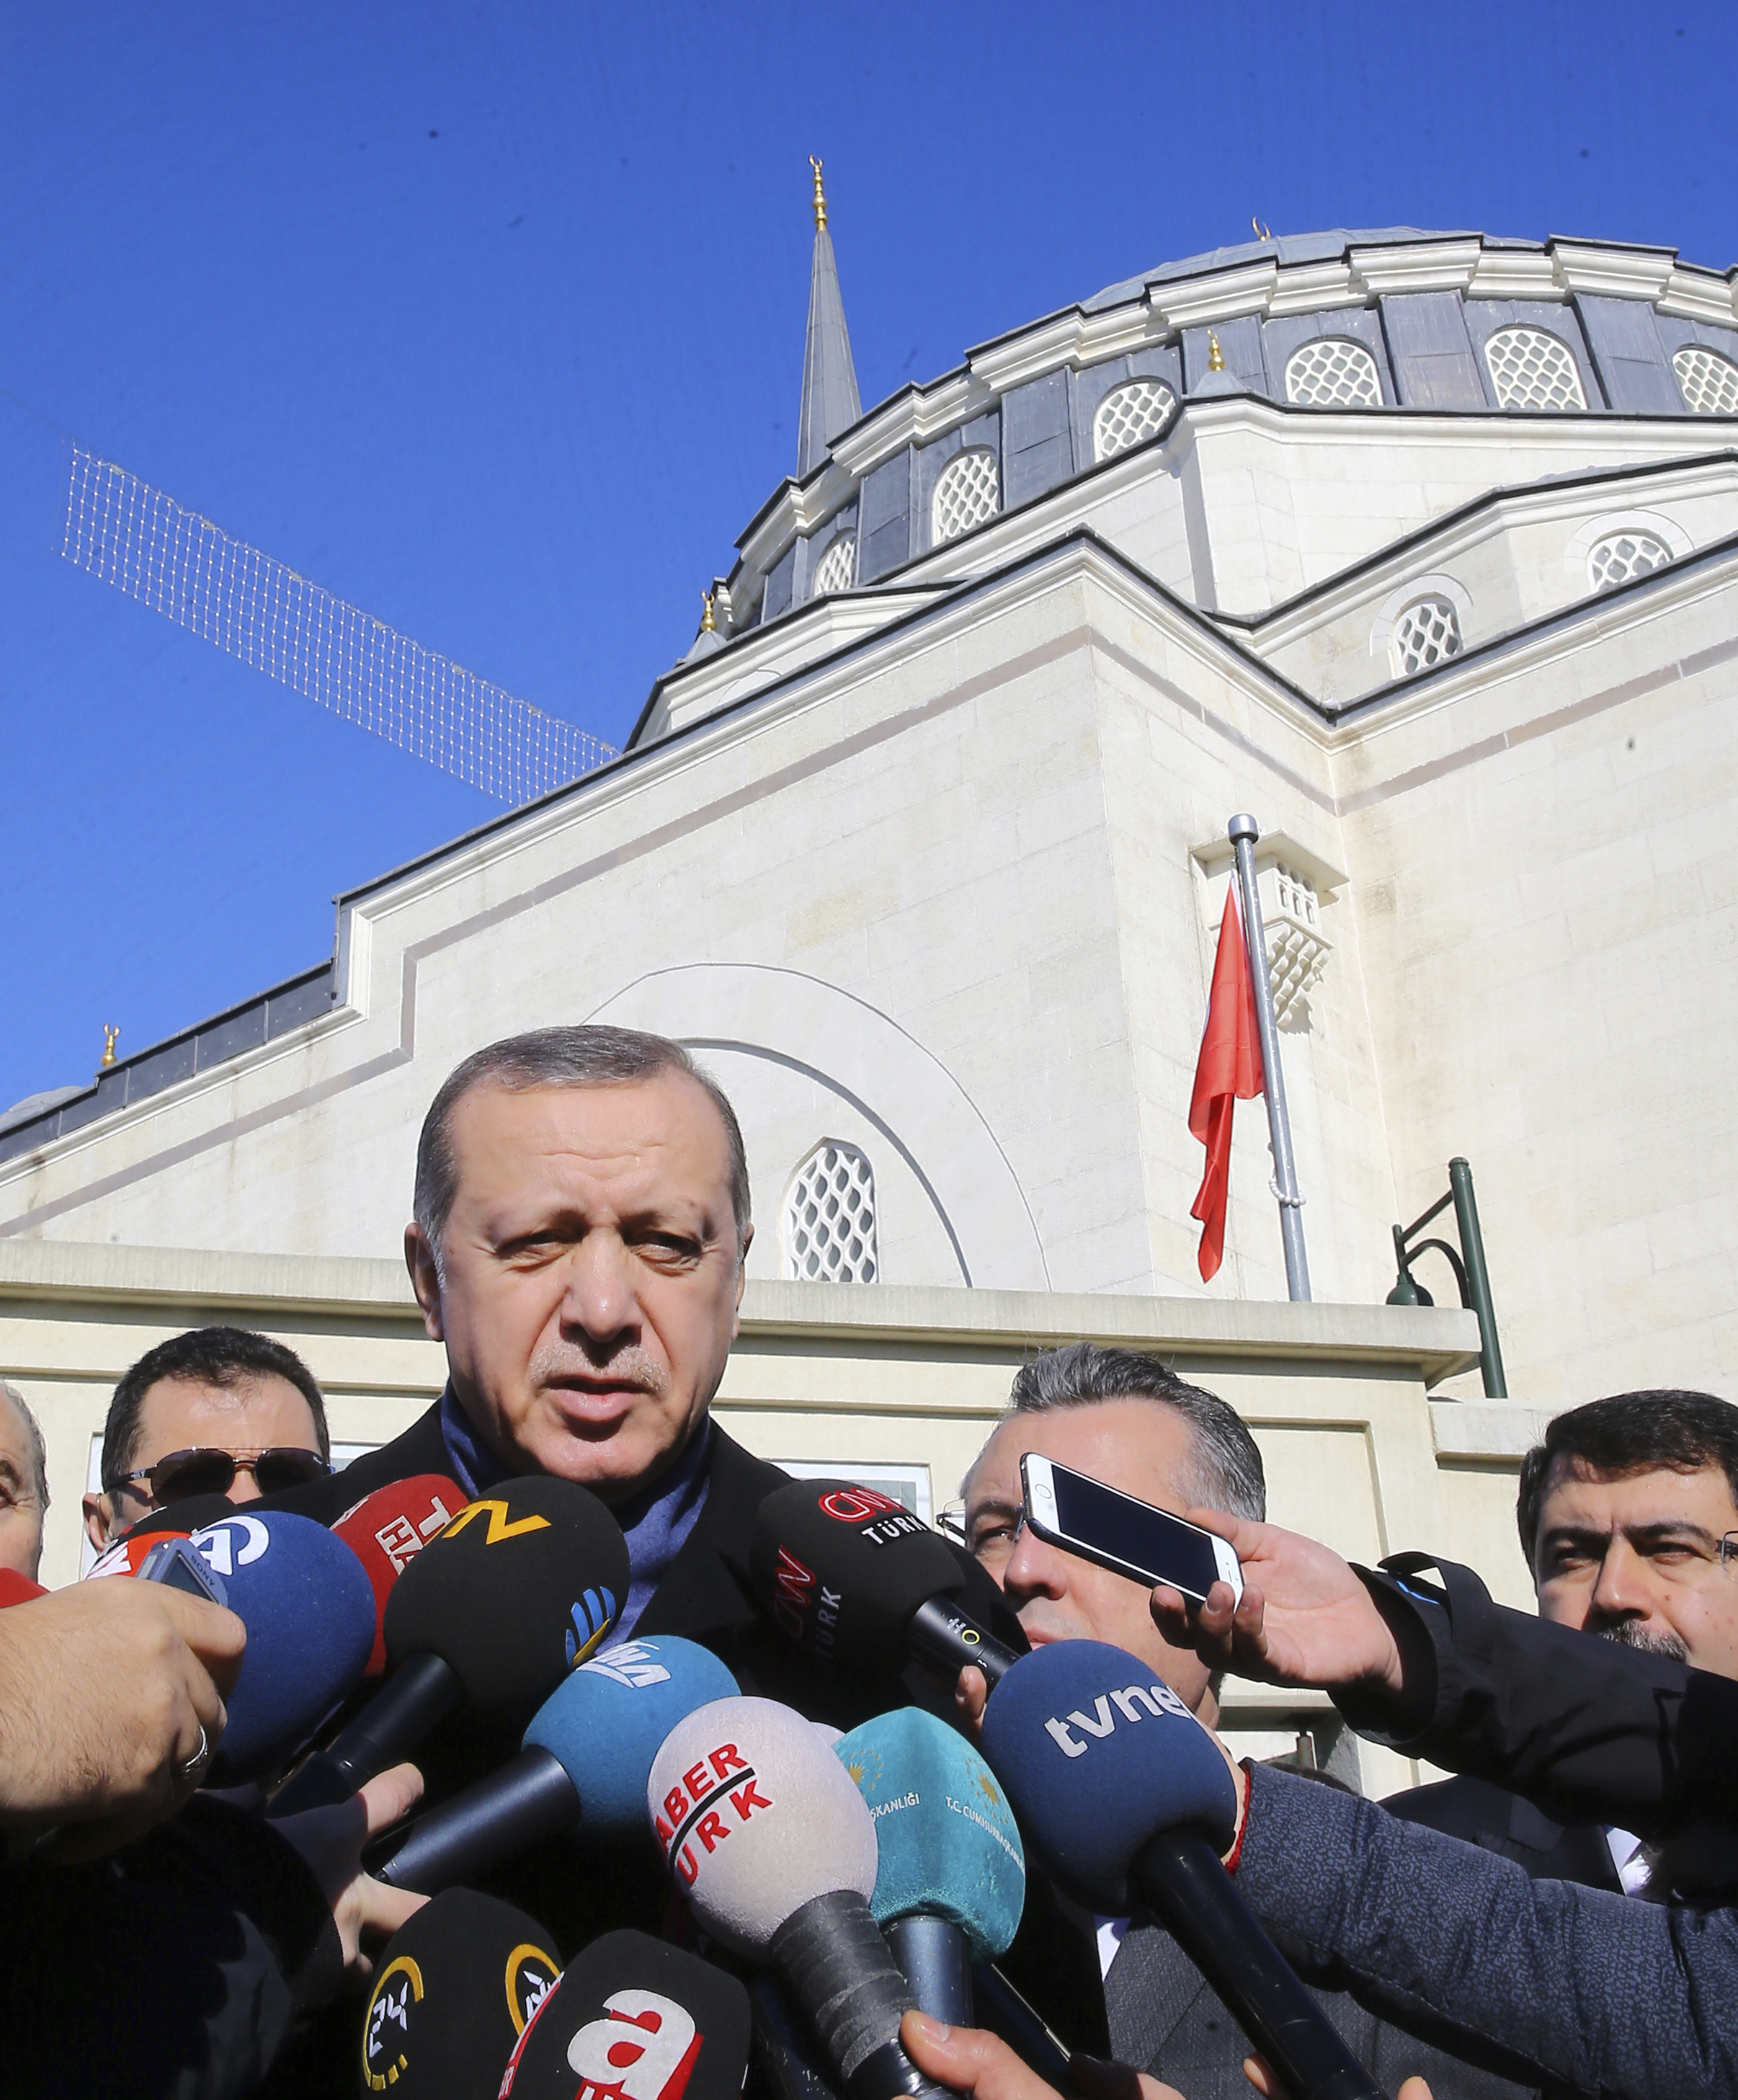 Турският парламент придвижва страната към президентски режим